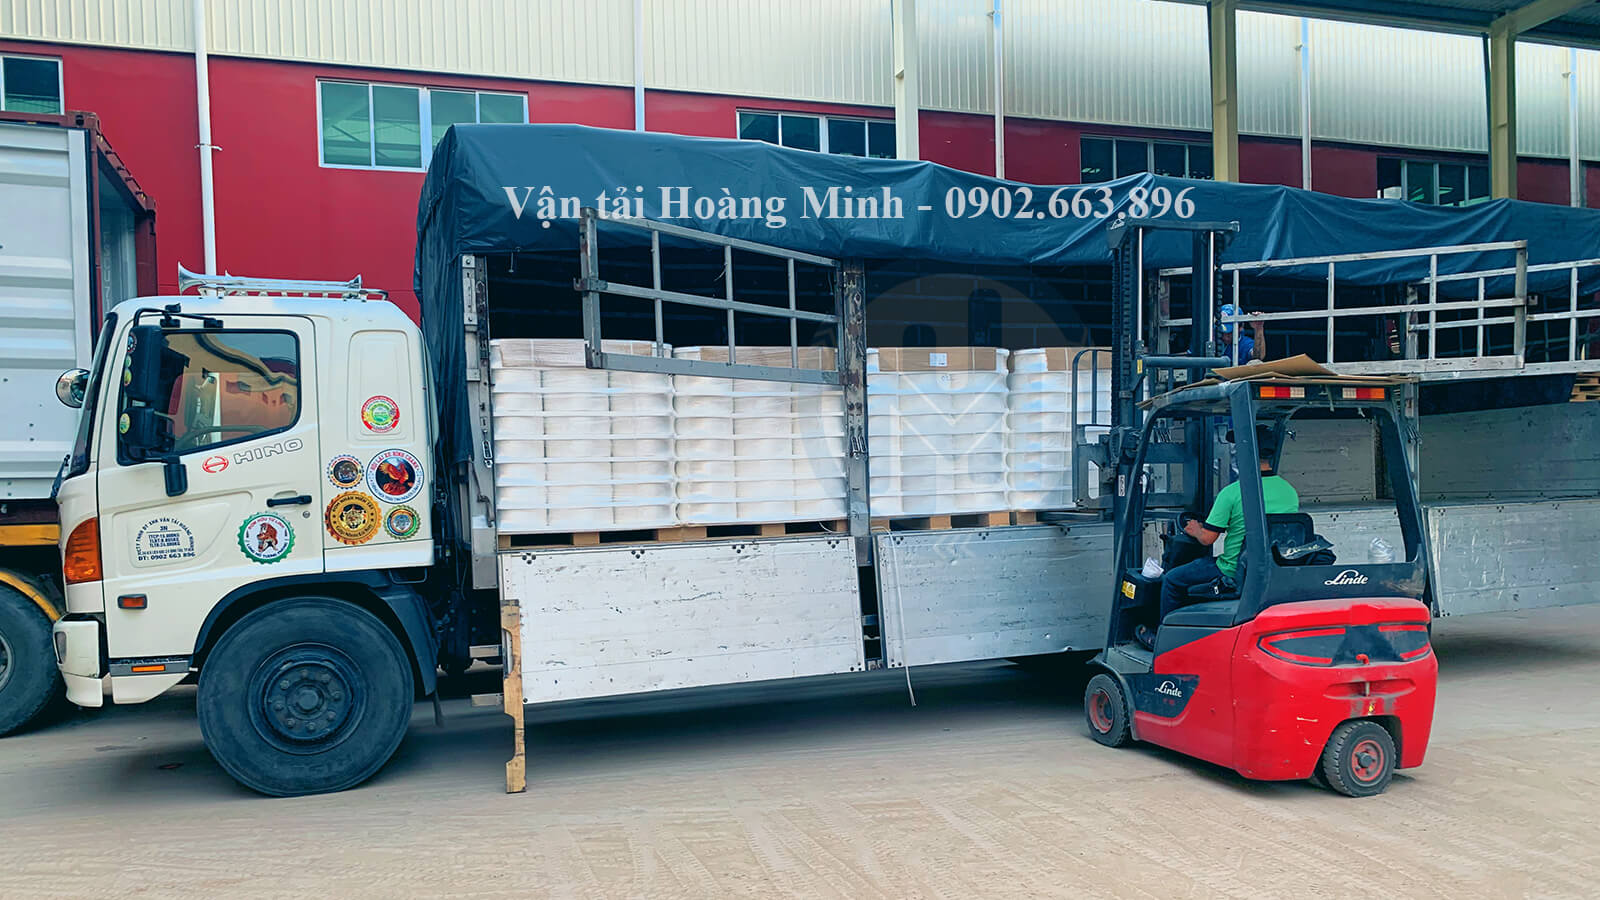 Hoàng Minh vận chuyển hàng hoá cho các doanh nghiệp tại KCN Kiên Giang.jpg